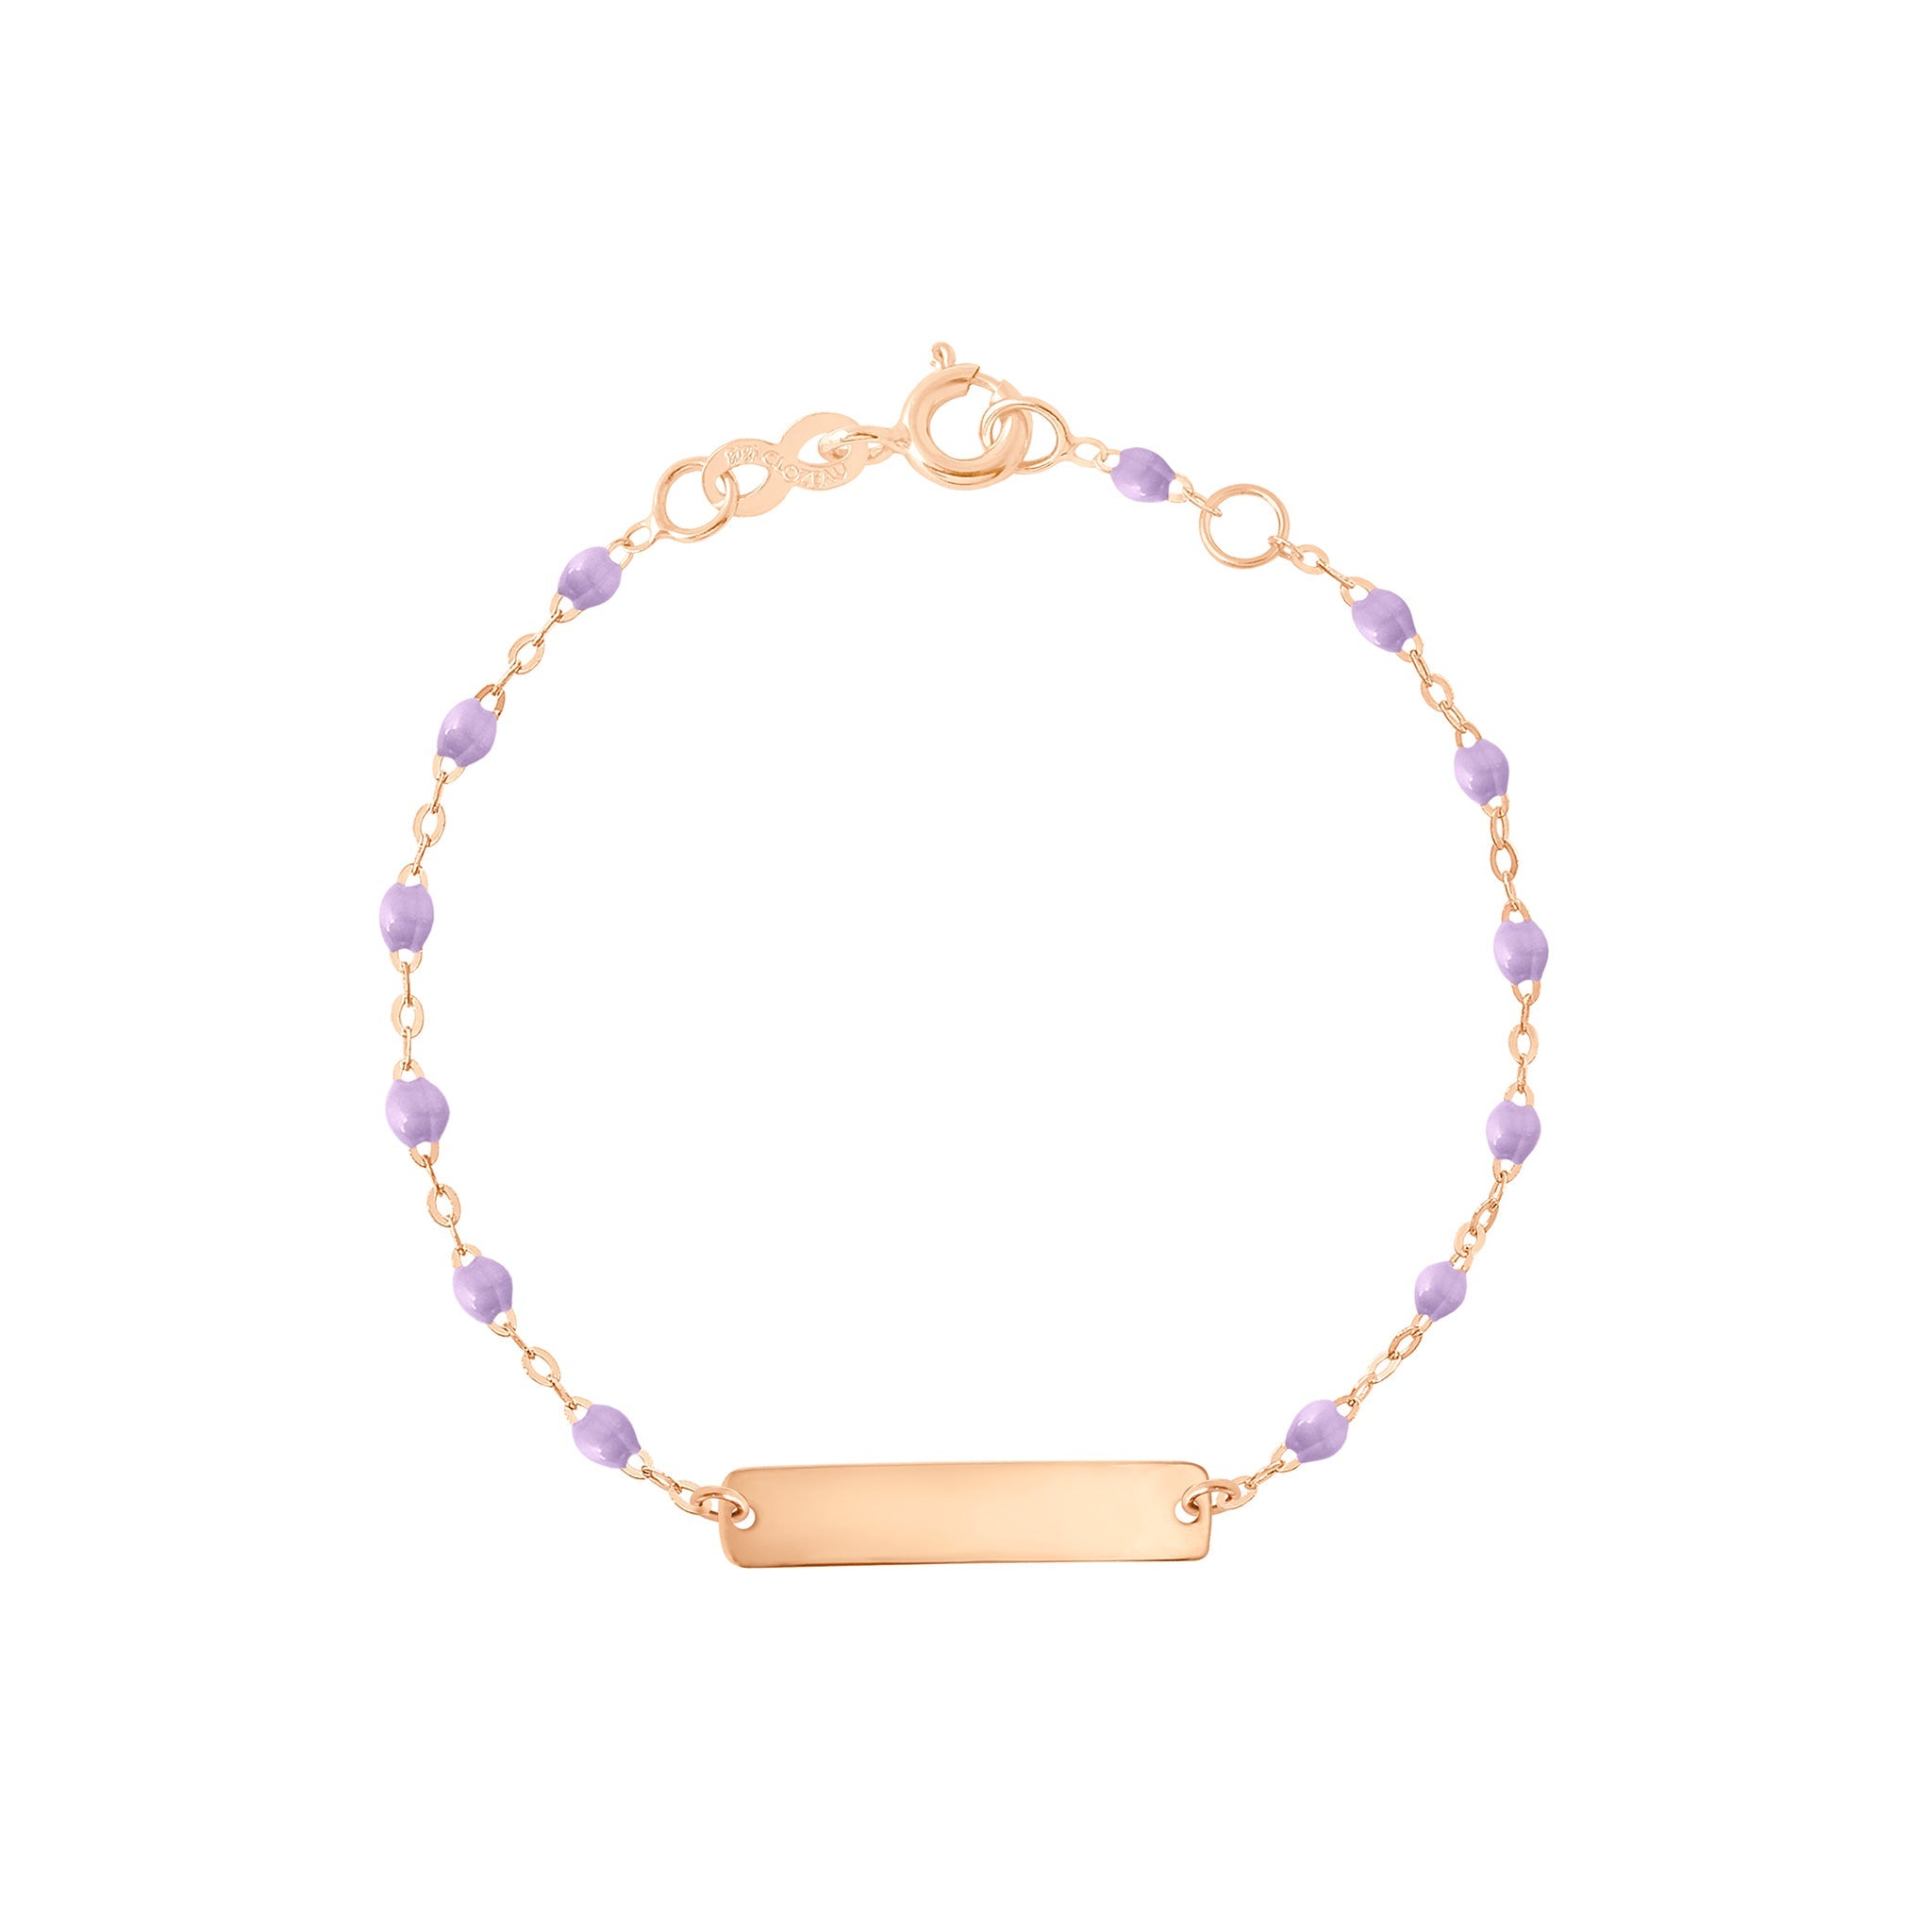 Bracelet parme Little Gigi, plaque rectangle, or rose, 15 cm little gigi Référence :  b3lg001r1015xx -1